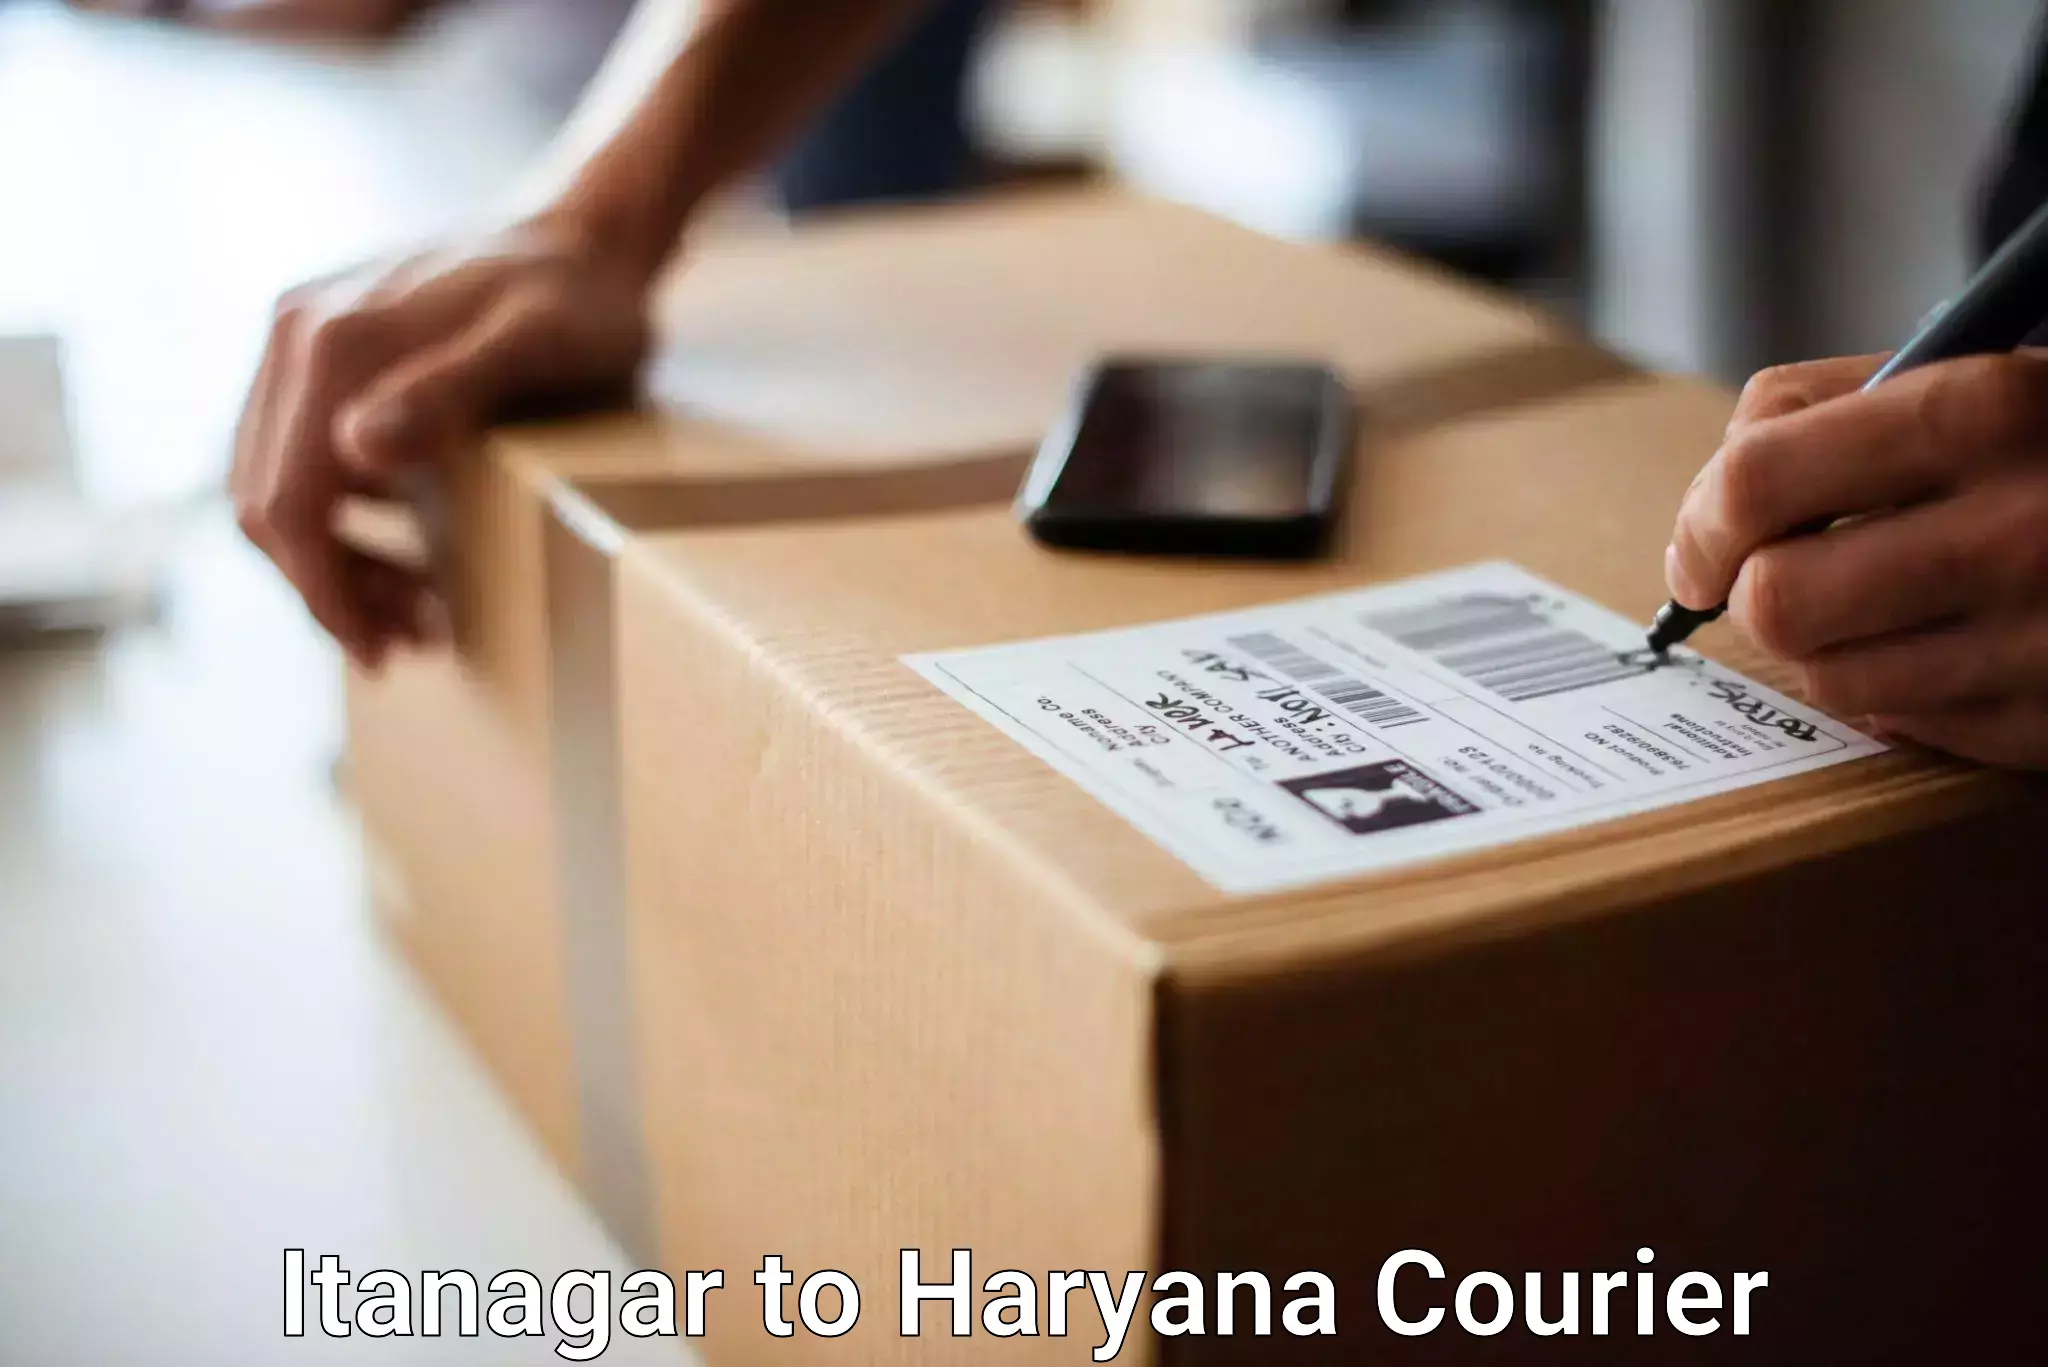 Baggage transport quote Itanagar to Panchkula